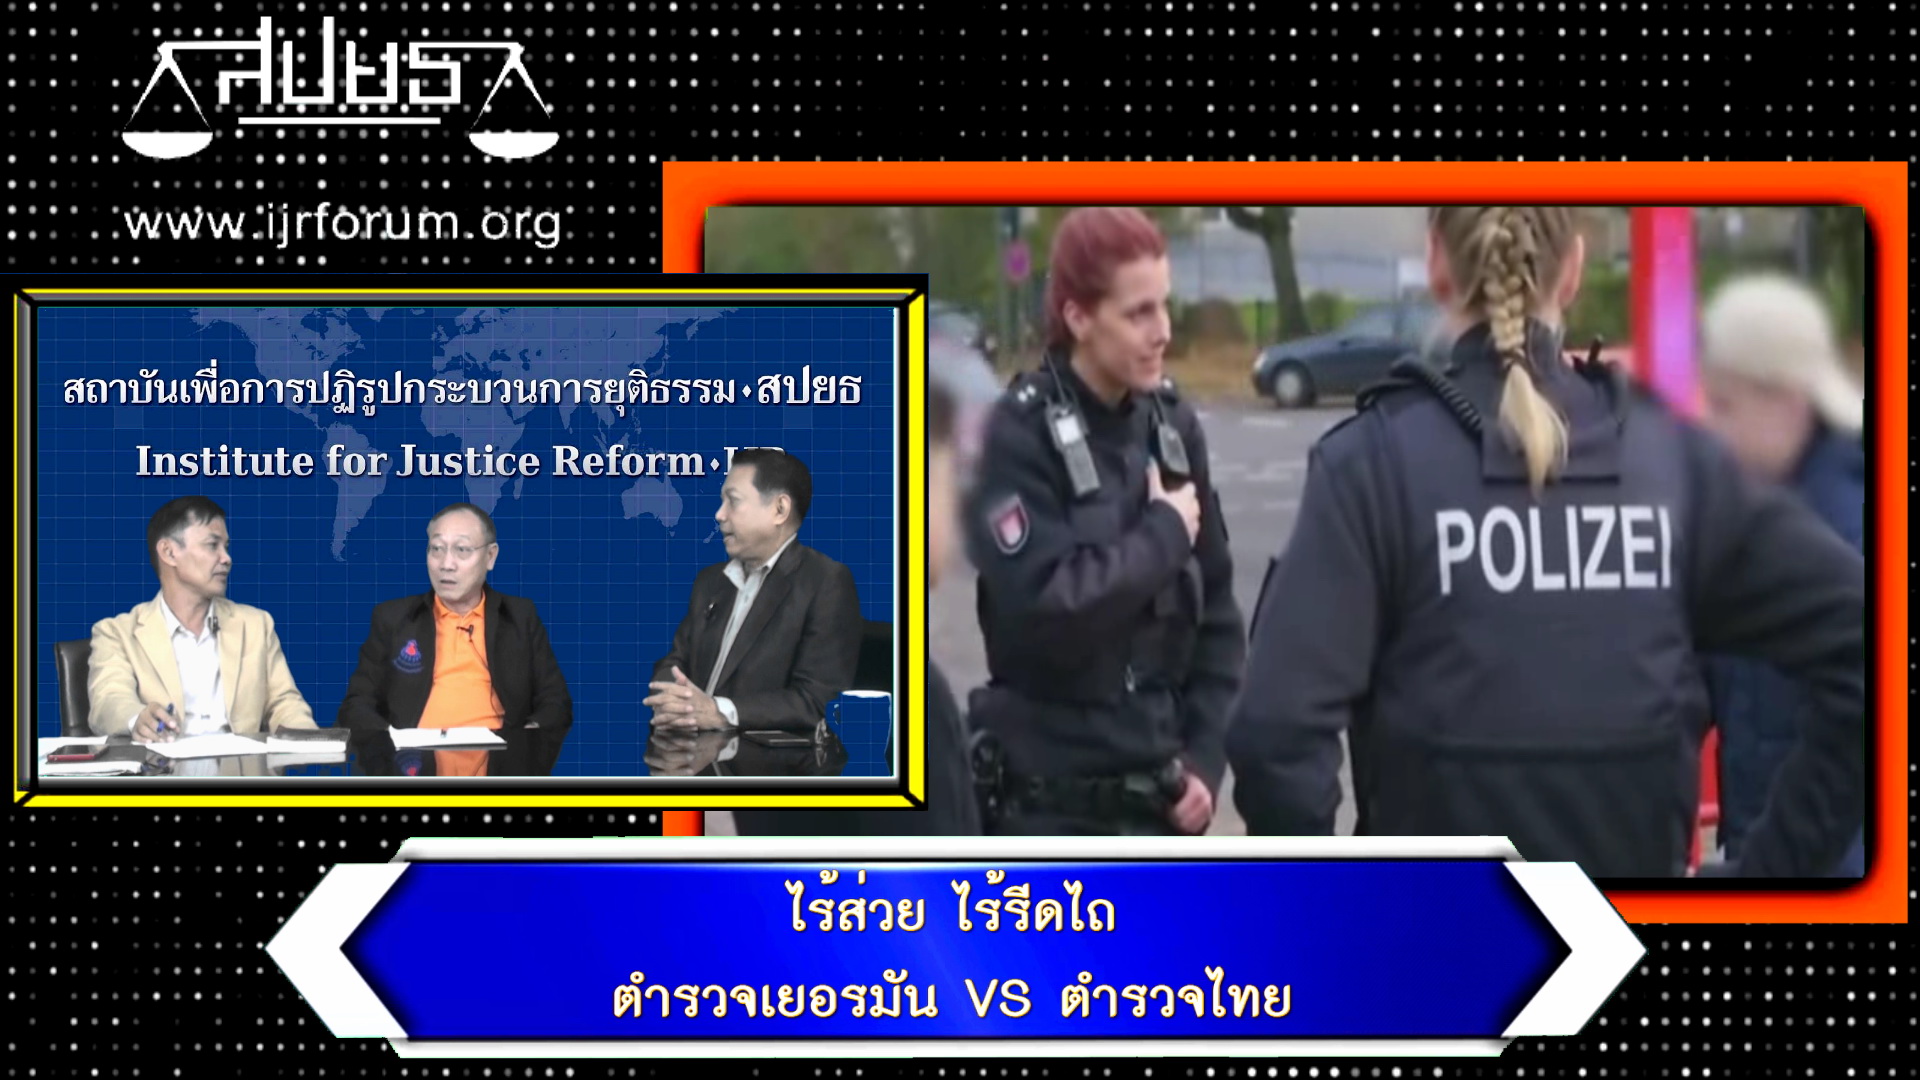 ไร้ส่วย ไร้รีดไถ ตำรวจเยอรมัน เปรียบเทียบตำรวจไทย – ยุติธรรมวิพากษ์ EP.54